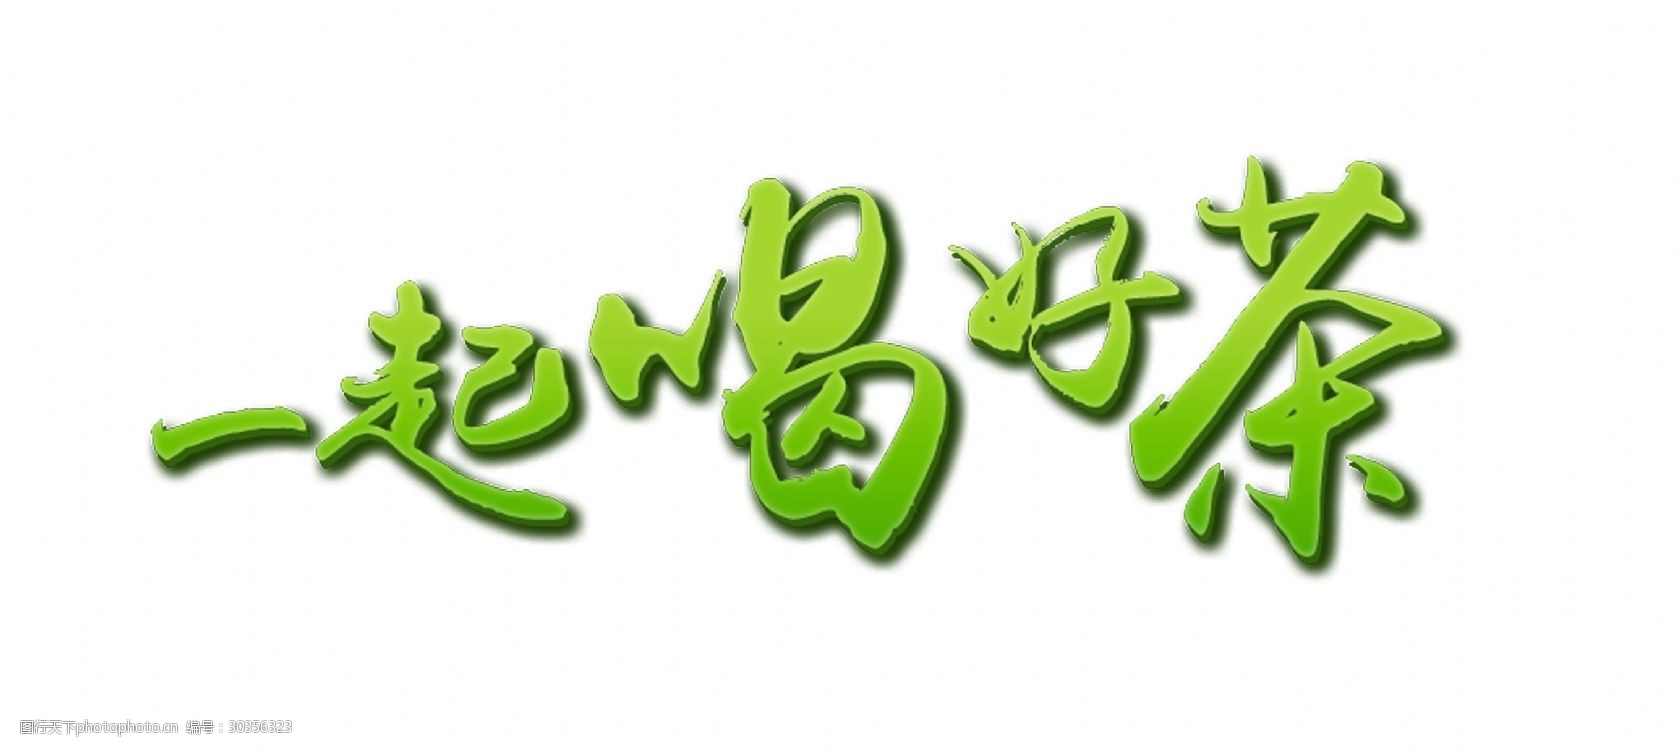 立体字艺术字设计 茶叶 立体字 绿色      素材 一起喝好茶 品茶 喝茶